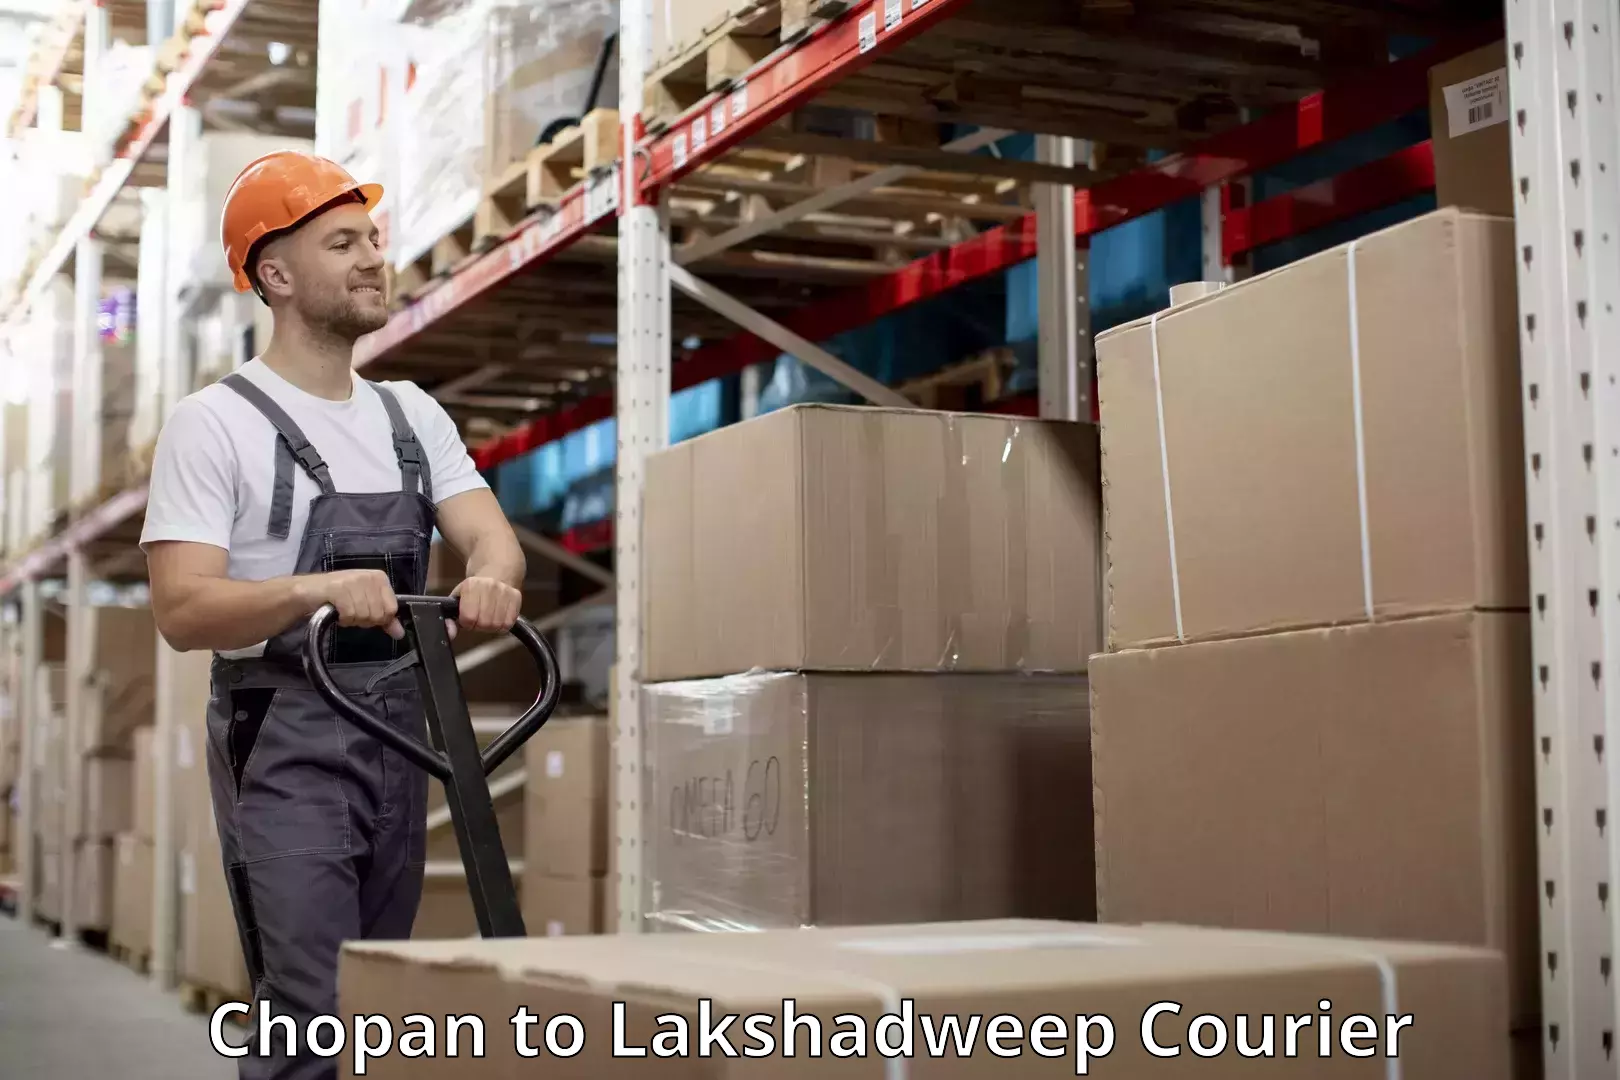 Baggage shipping service Chopan to Lakshadweep